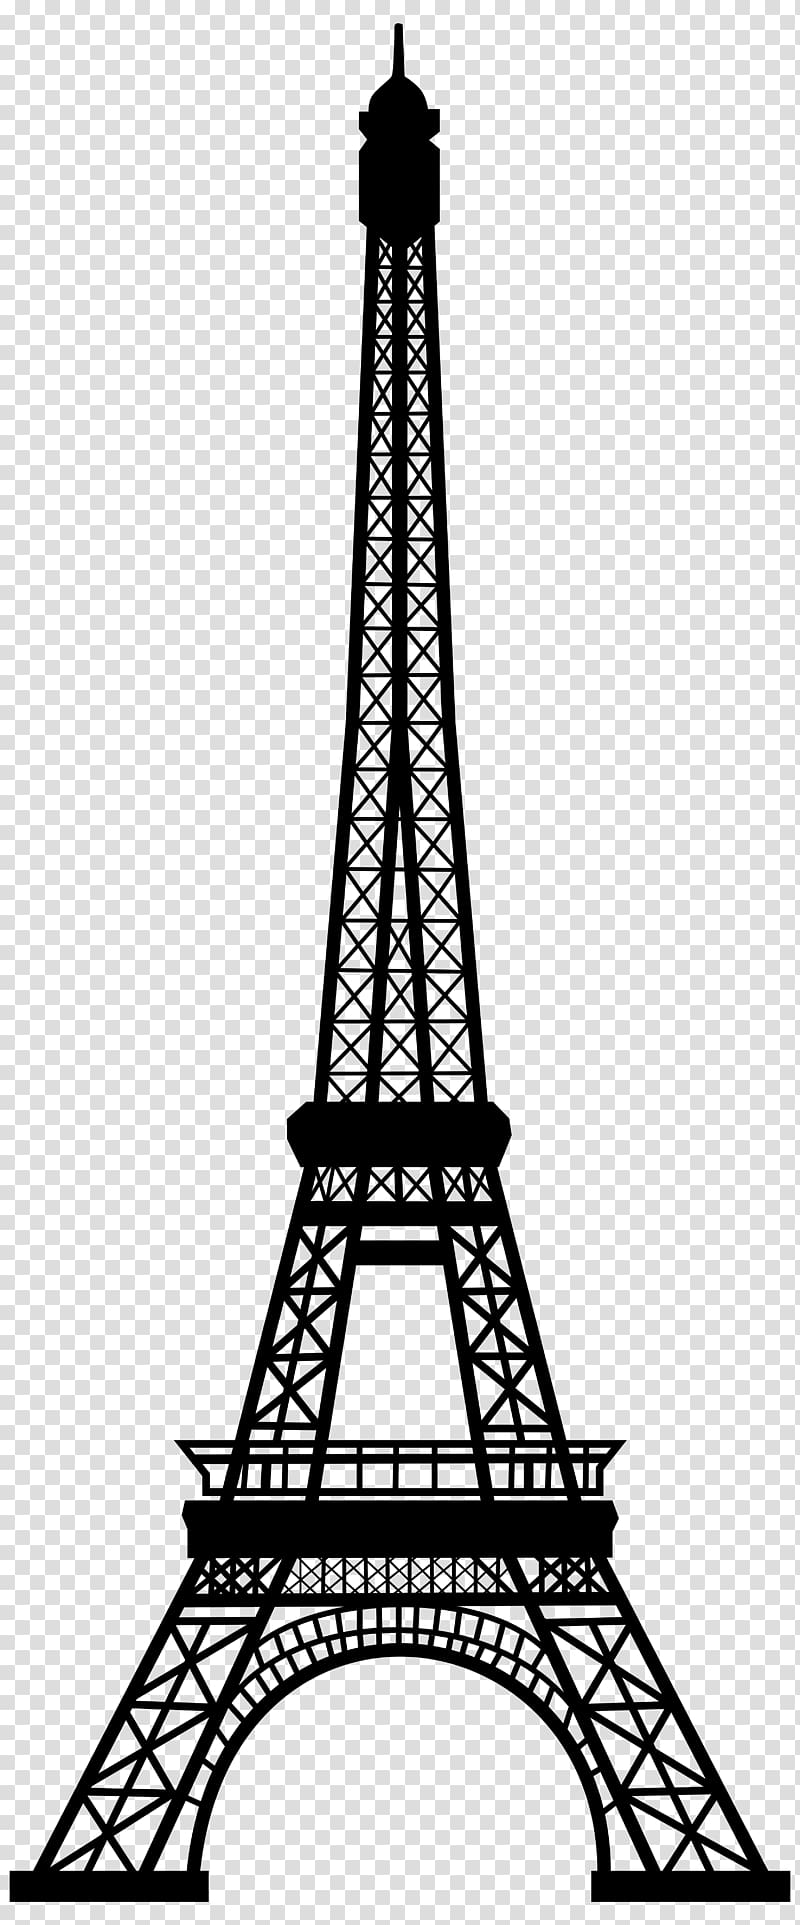 Eiffel Tower Silhouette Paris Transparent Background Png Clipart